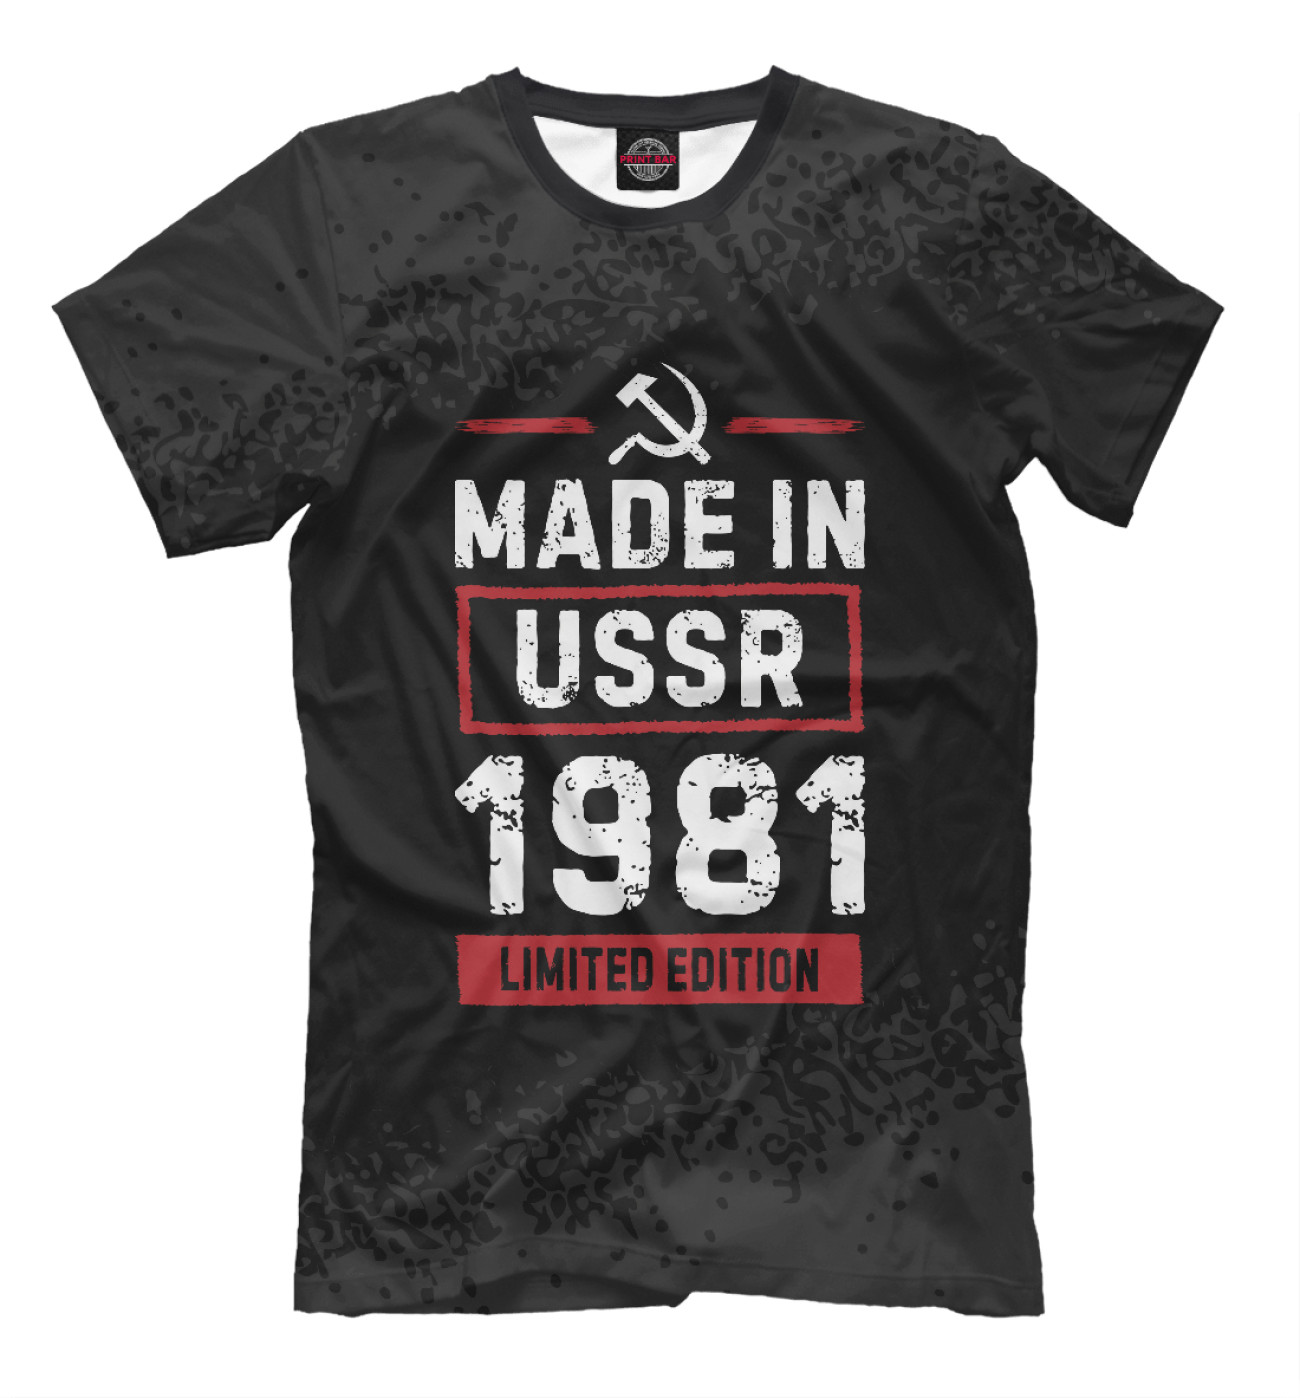 Мужская Футболка Limited edition 1981 USSR, артикул: DVO-504122-fut-2